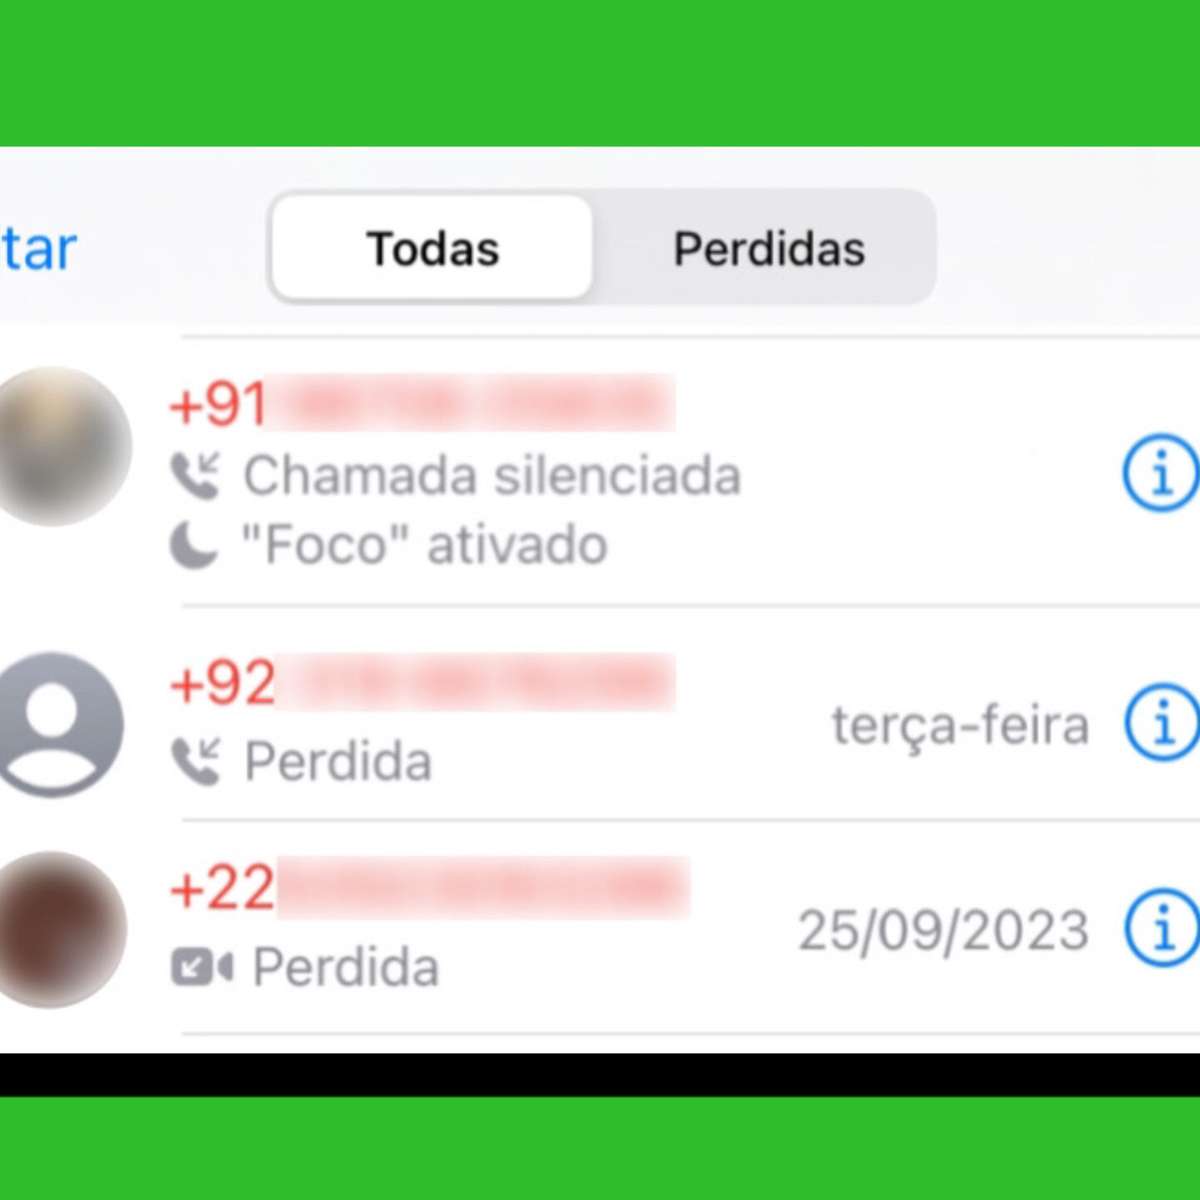 Números estrangeiros no WhatsApp inundam brasileiros com mensagens; veja  como denunciar, Tecnologia